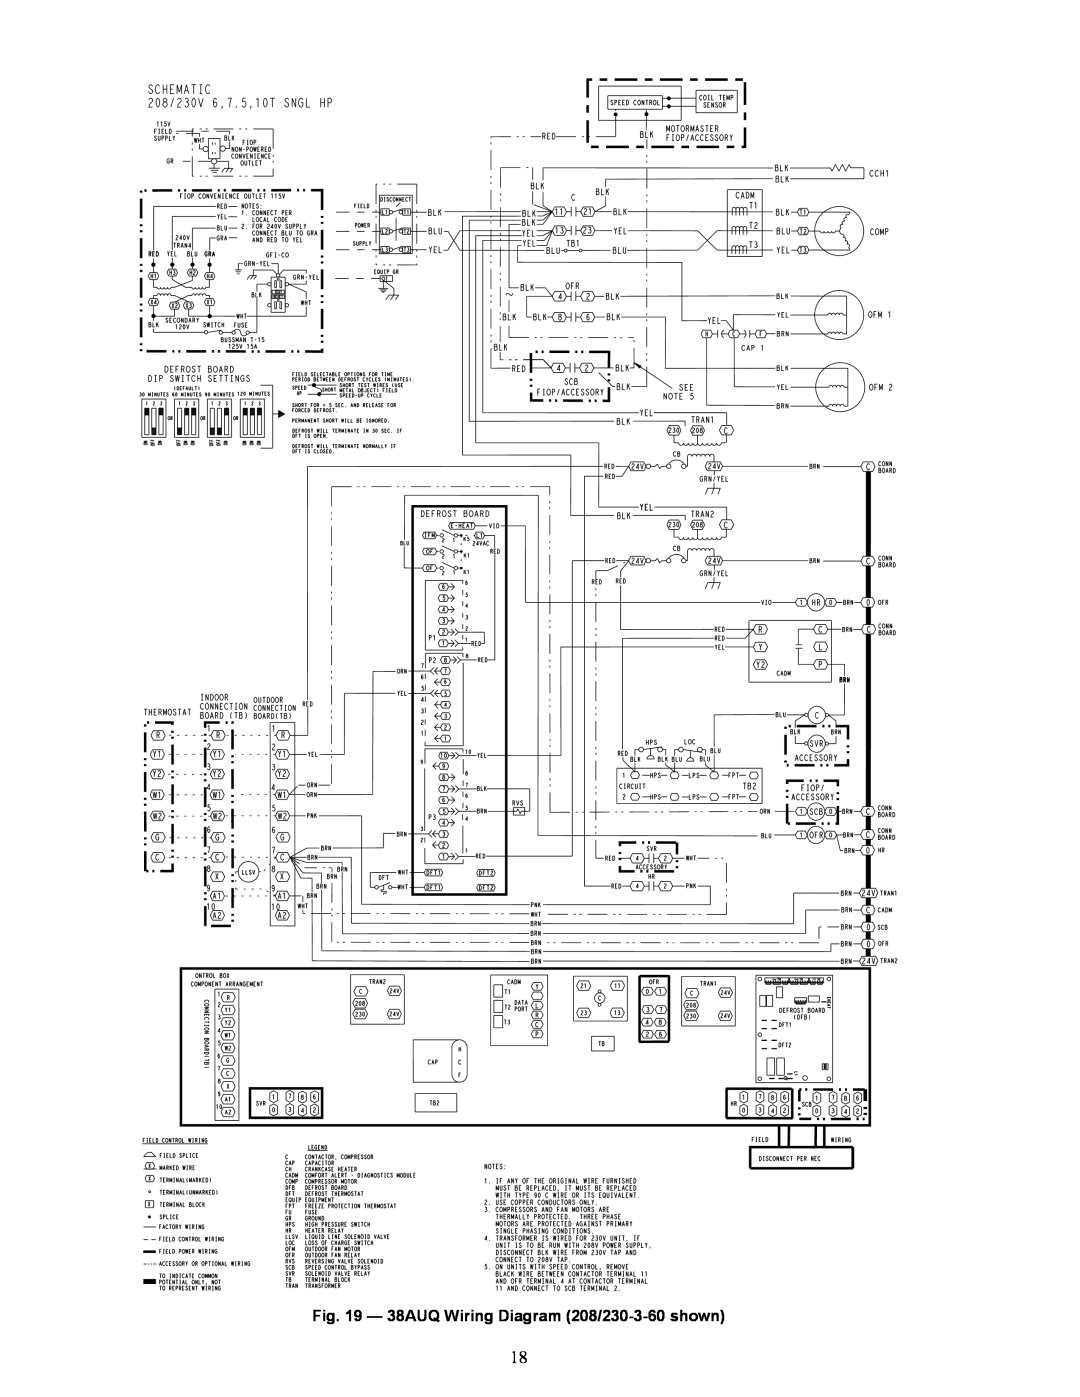 Carrier appendix 38AUQ Wiring Diagram 208/230-3-60shown 